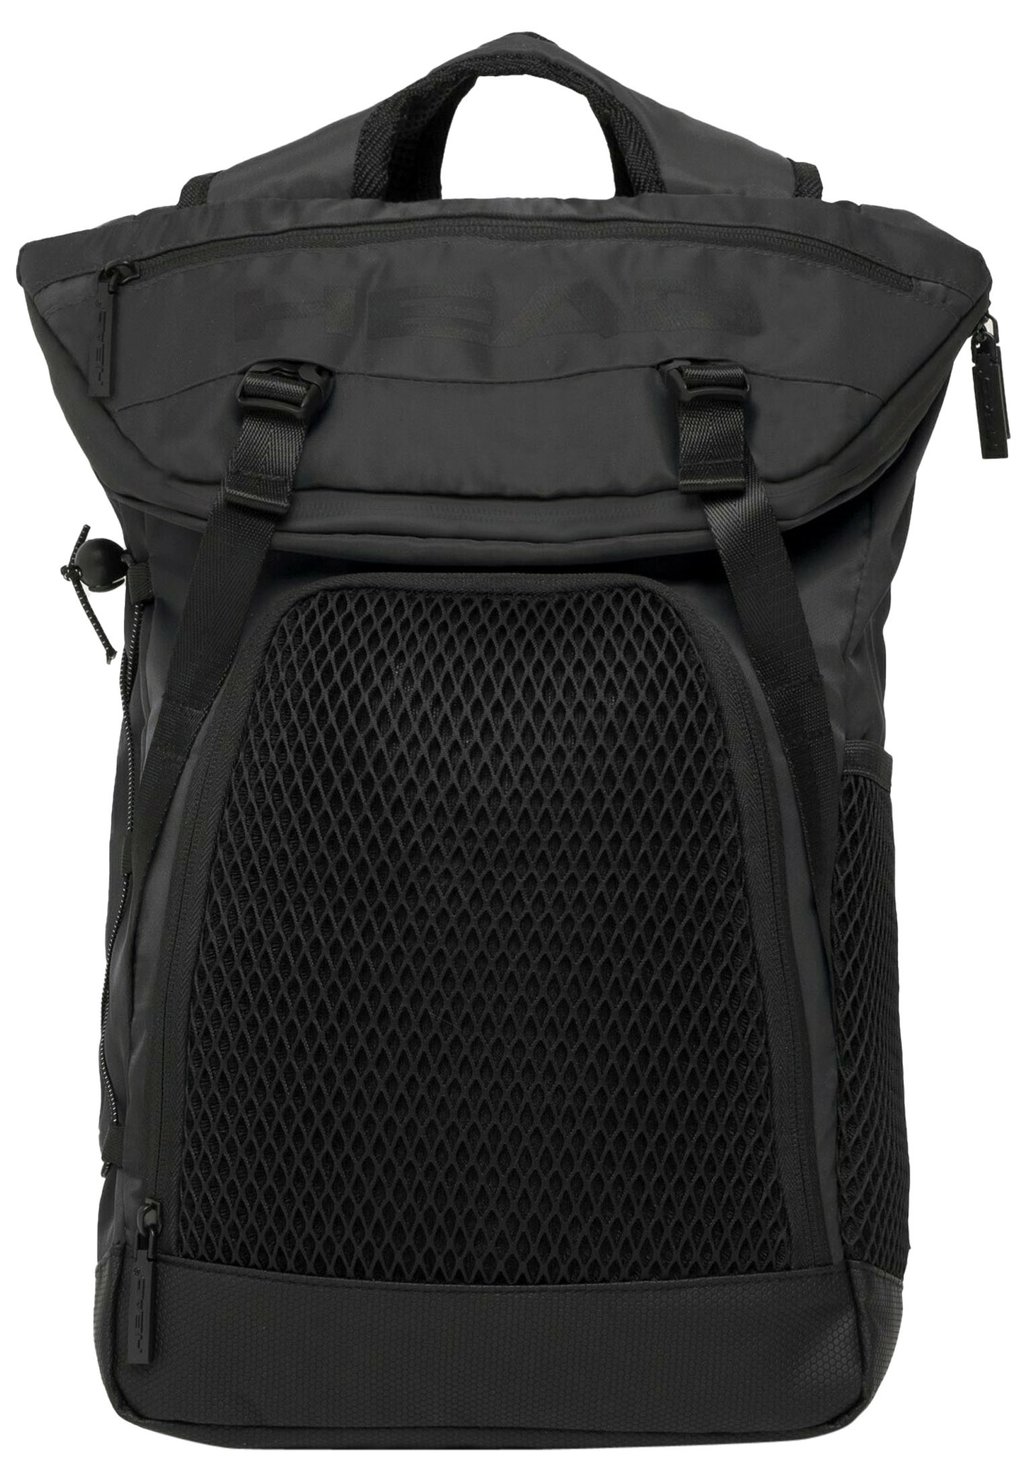 Рюкзак для путешествий Head Net Vertical, чёрный фото